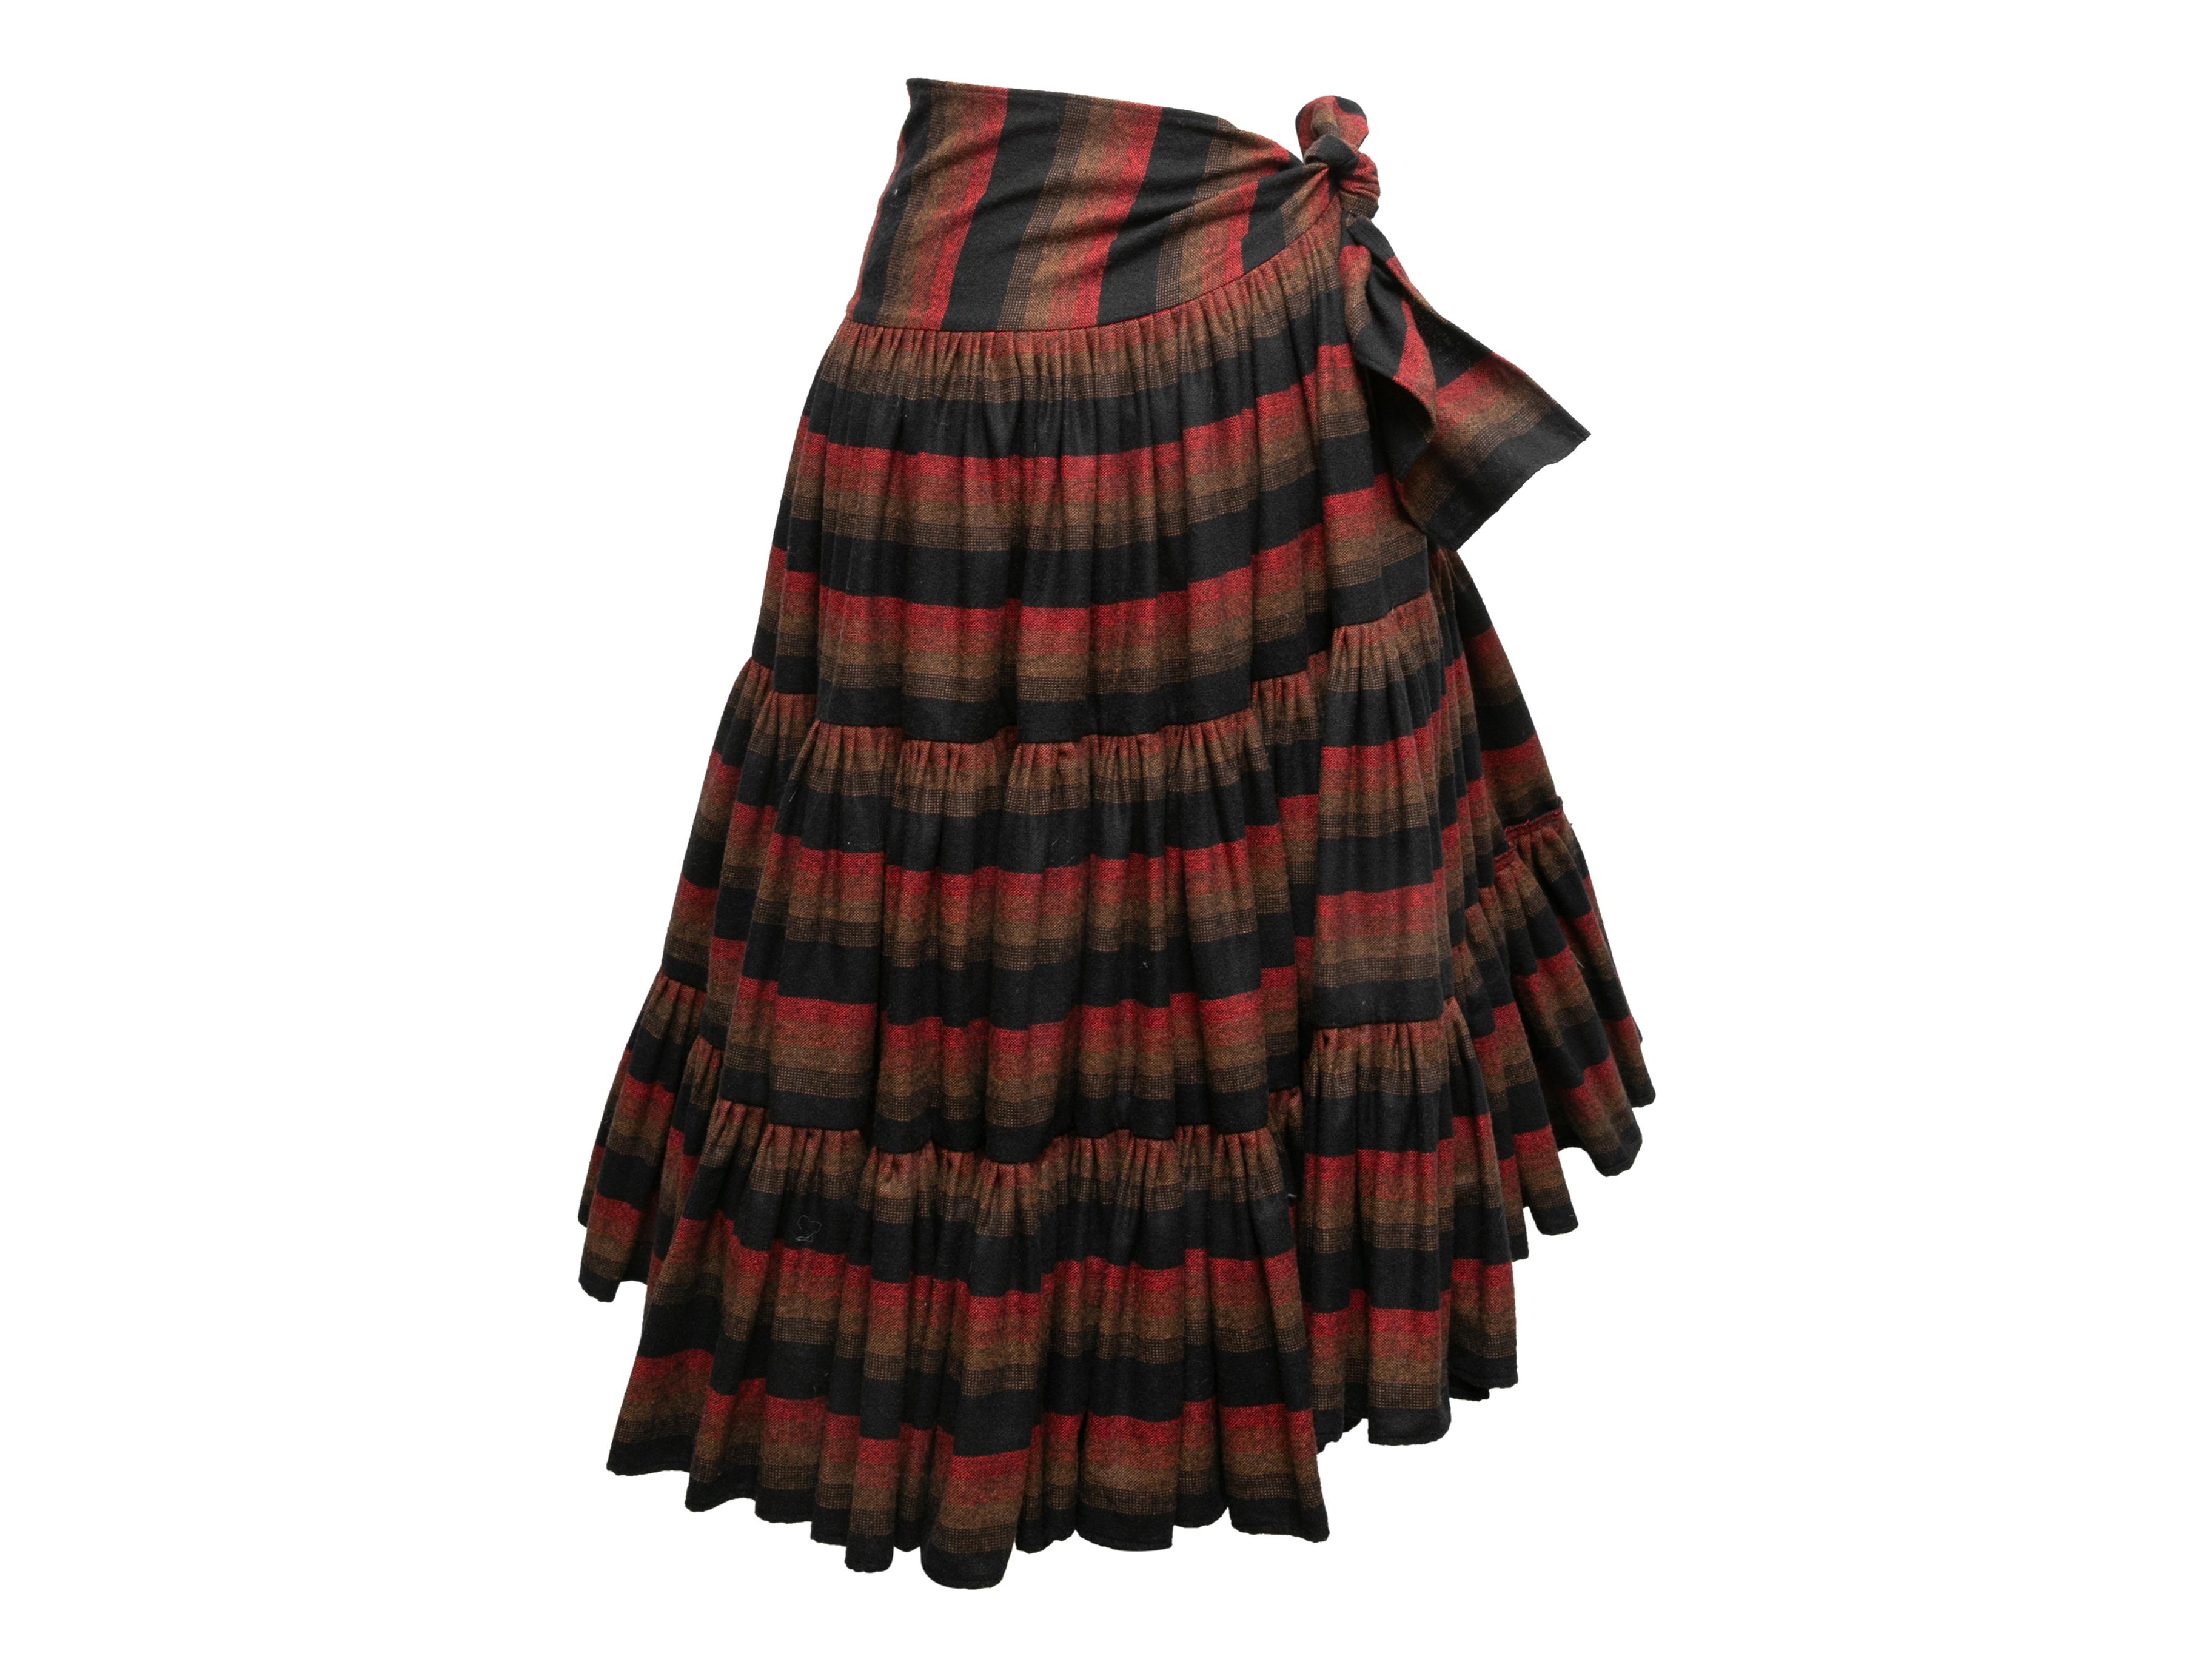 Schwarz und mehrfarbig gestreifter Wickelrock von Norma Kamali im Vintage-Stil. Ca. 1970er Jahre. Krawattenverschluss an der Hüfte. 26